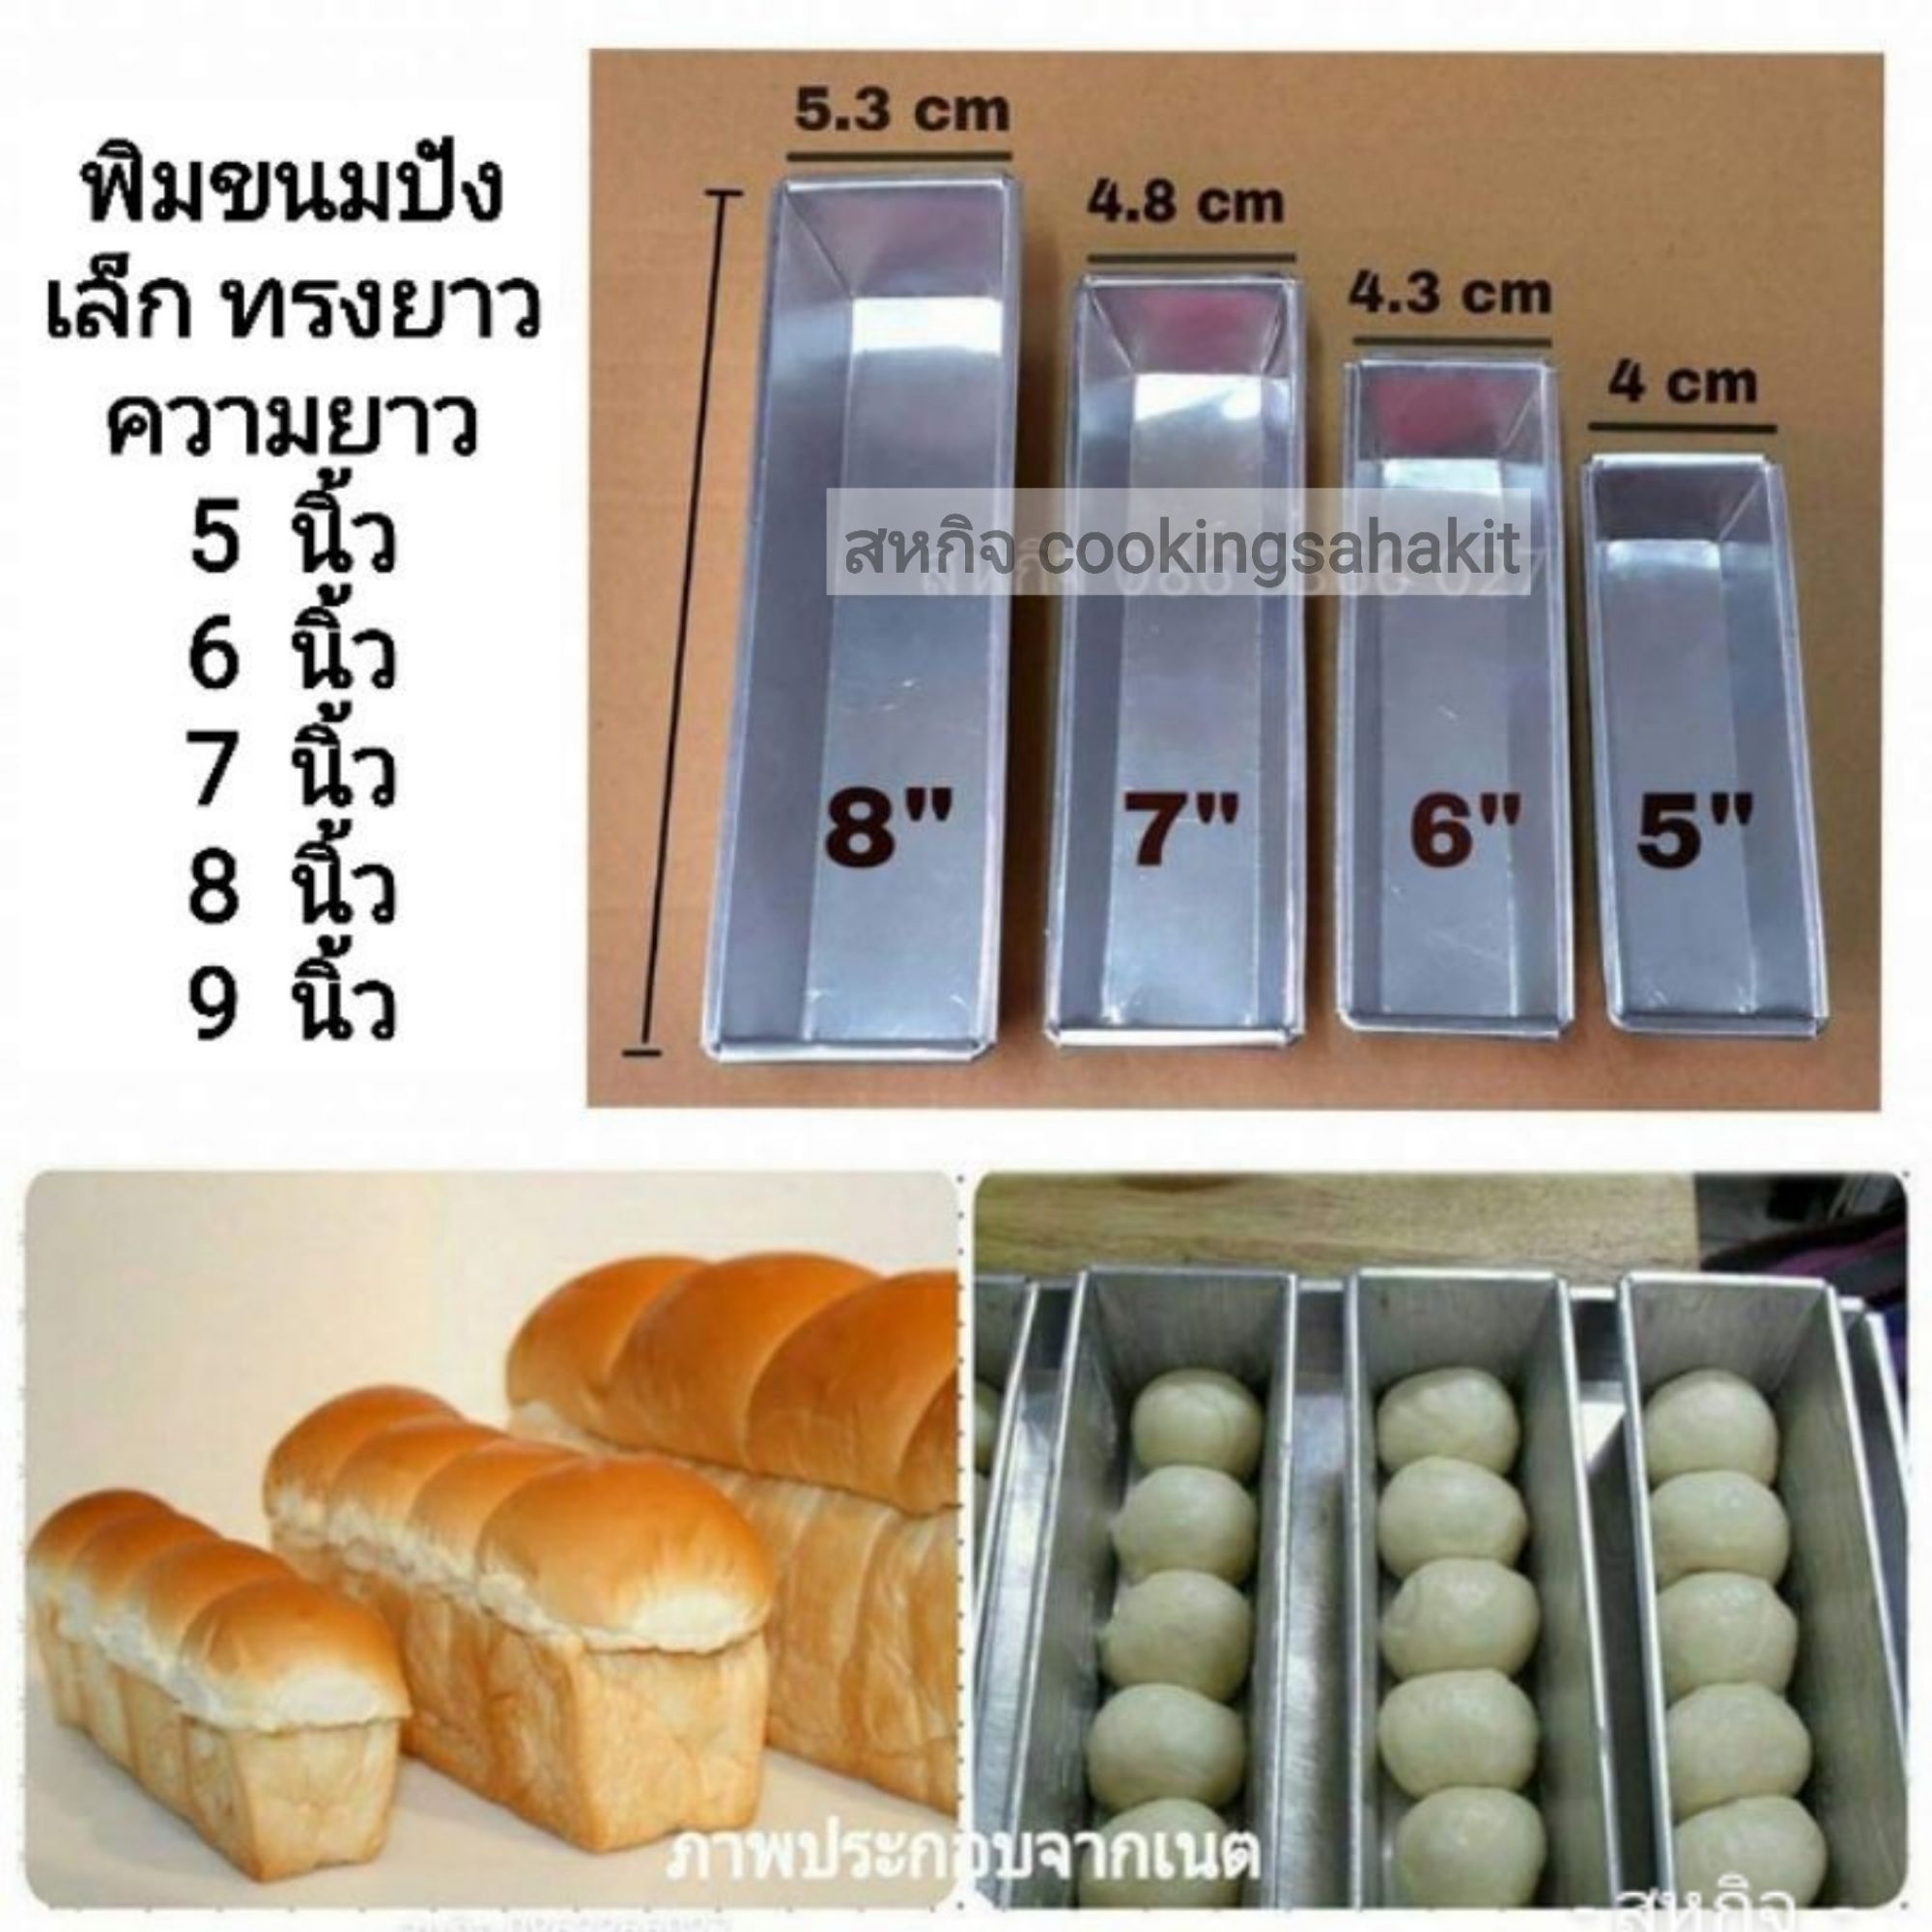 พิมขนมปังเล็ก ทรงยาว (ขาย 1 แพค 3 อัน)